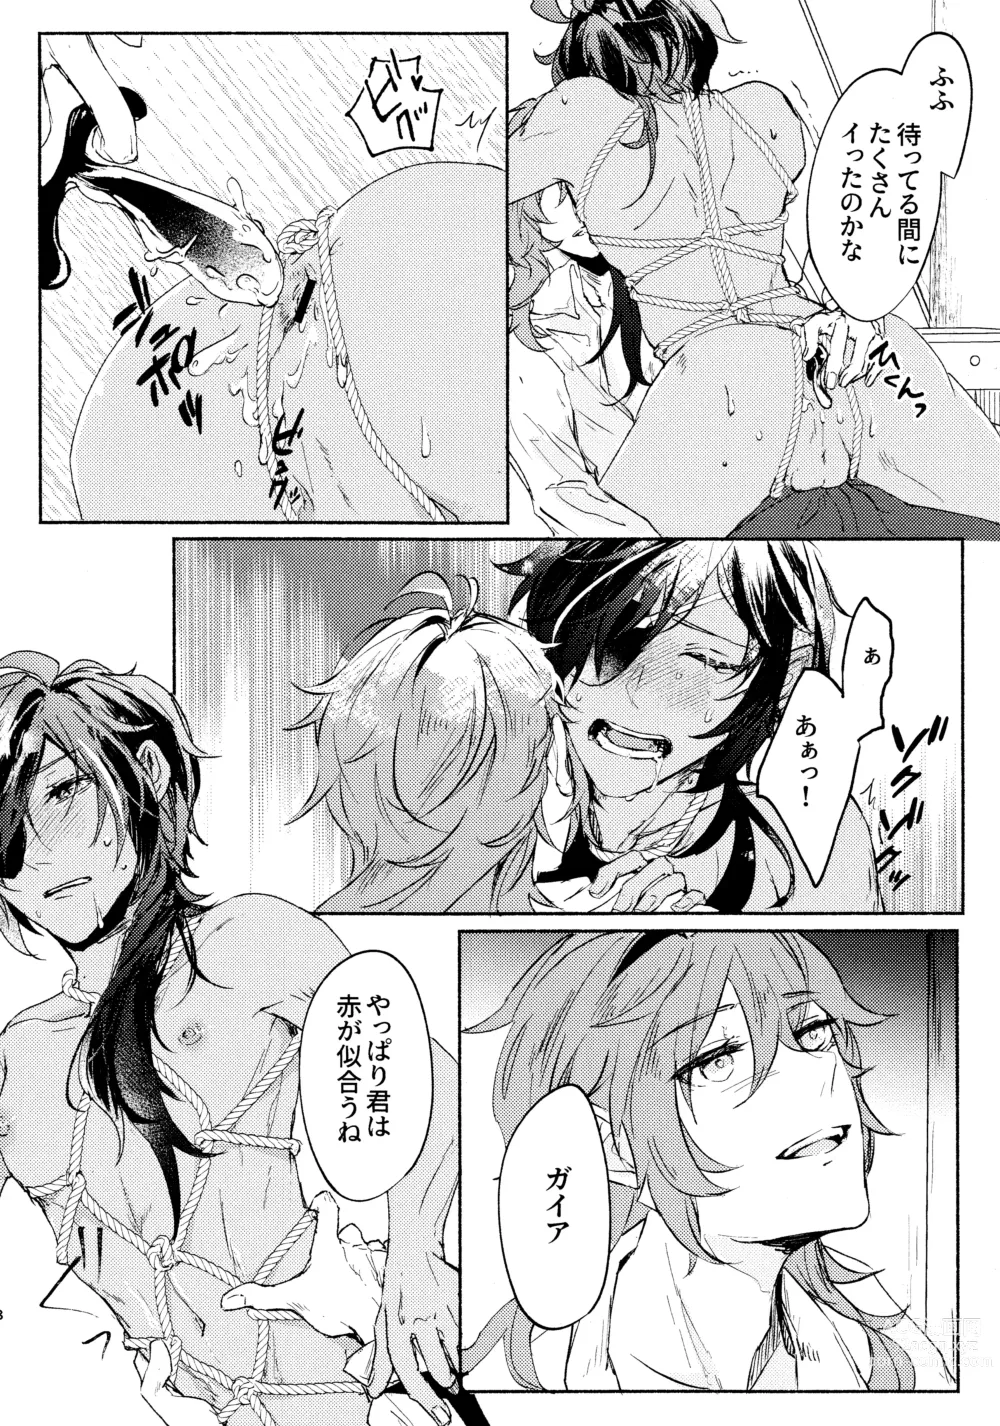 Page 7 of doujinshi Kiss me quick (Genshin Impact) 2023